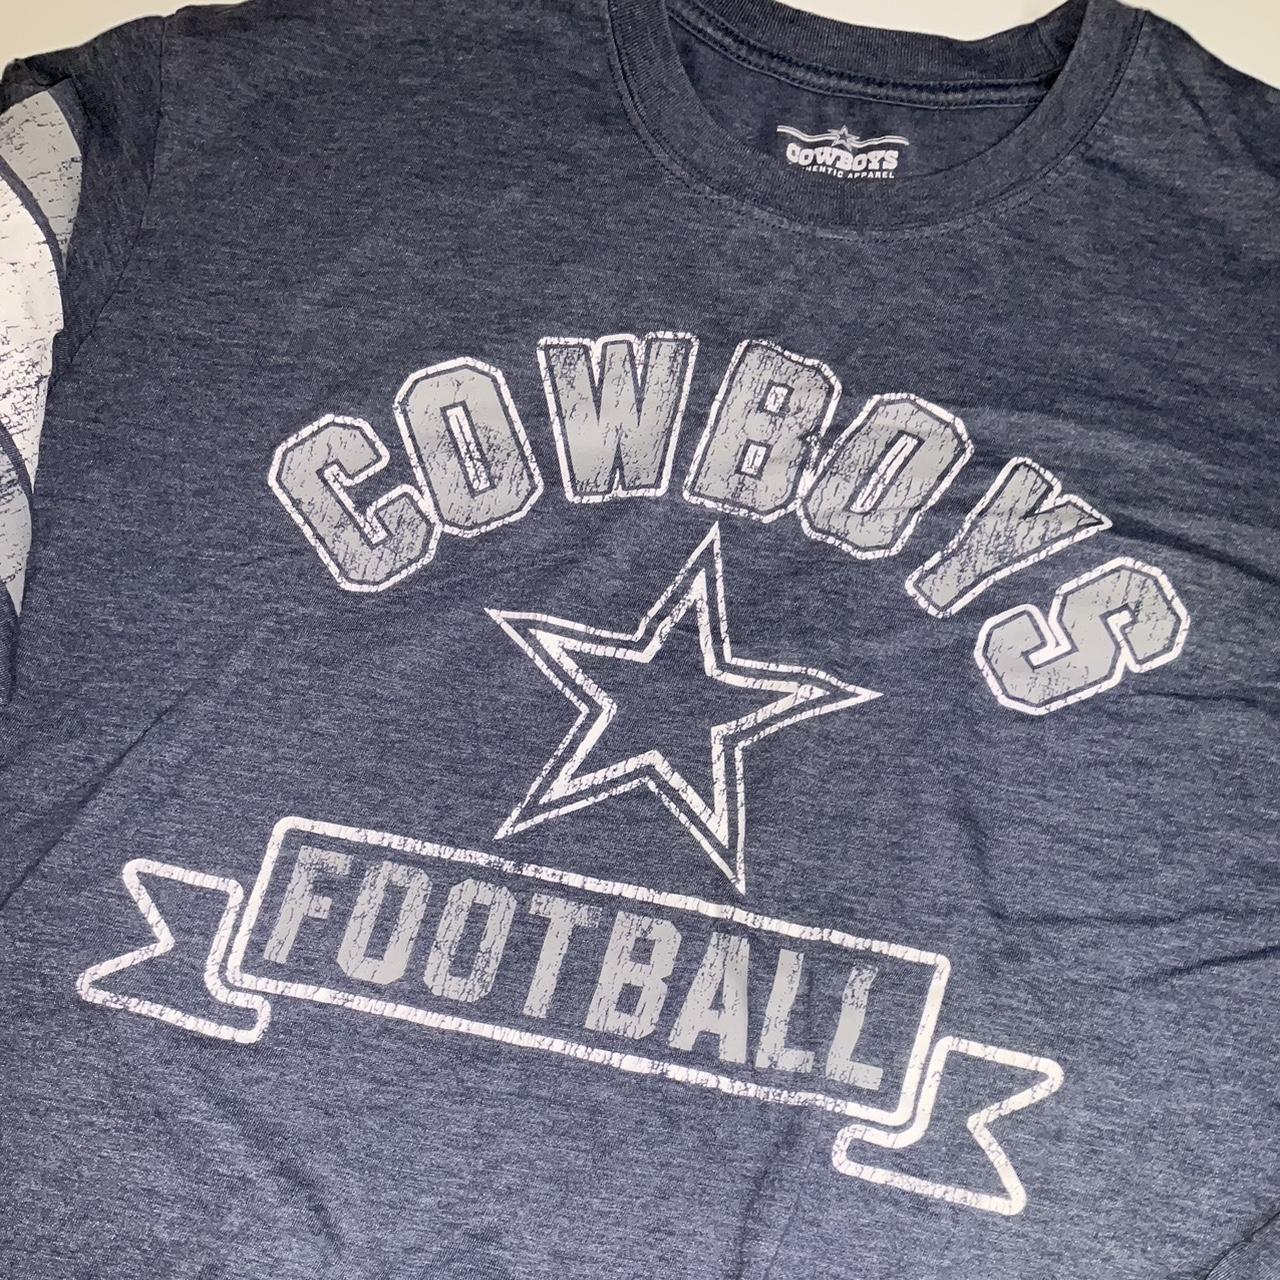 Dallas Cowboys Long Sleeve T Shirt Old Navy Mens - Depop